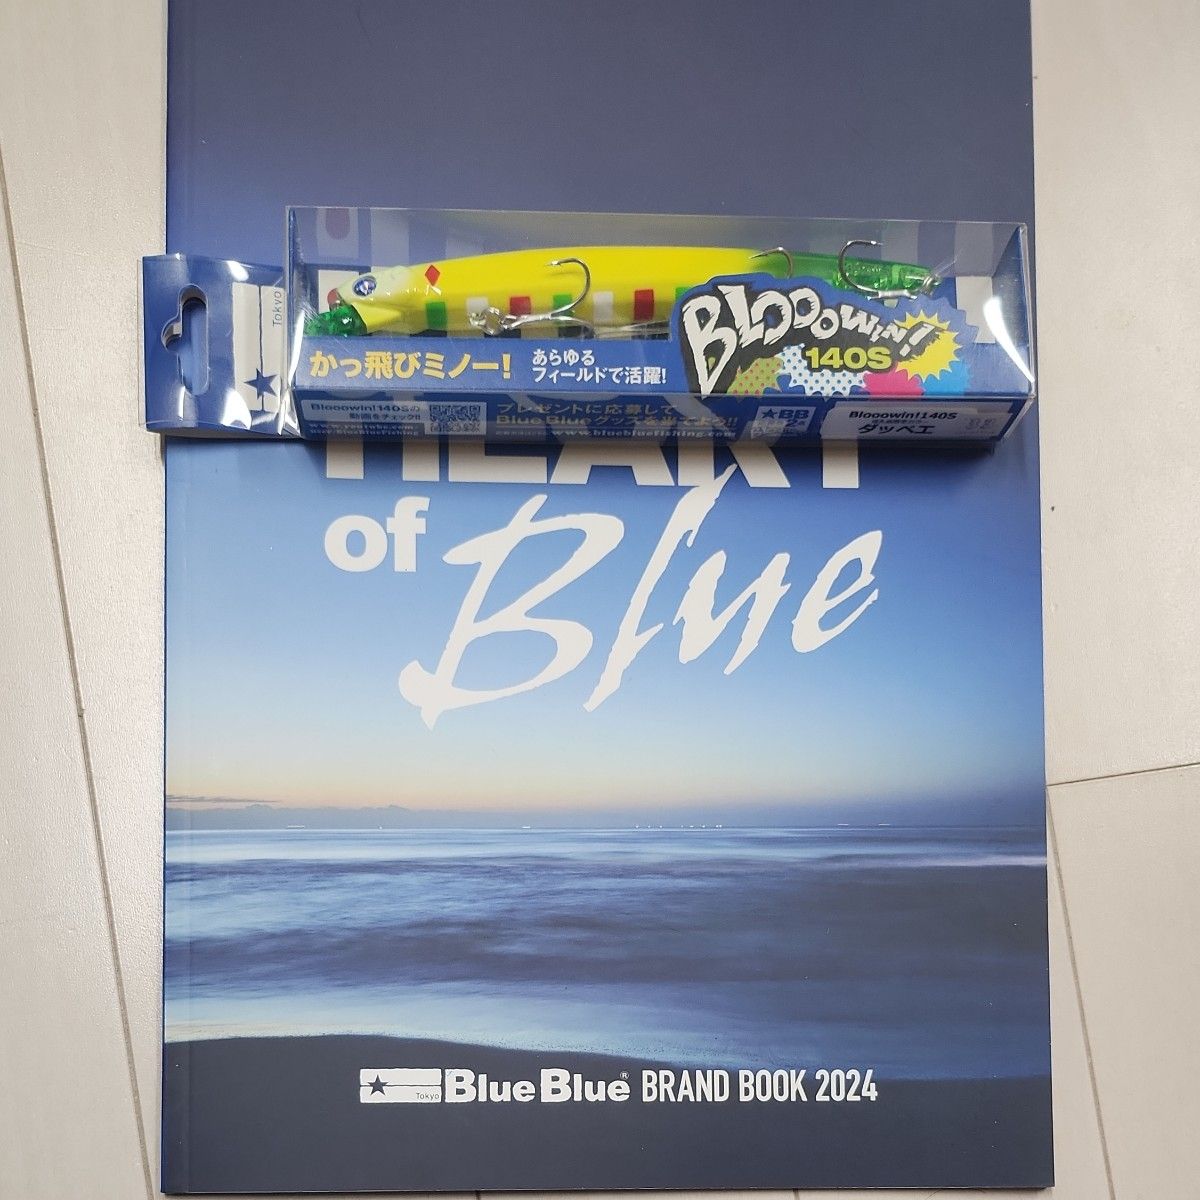 ブルーブルー、ブローウィン140Sの返礼品限定カラーのダッペエ